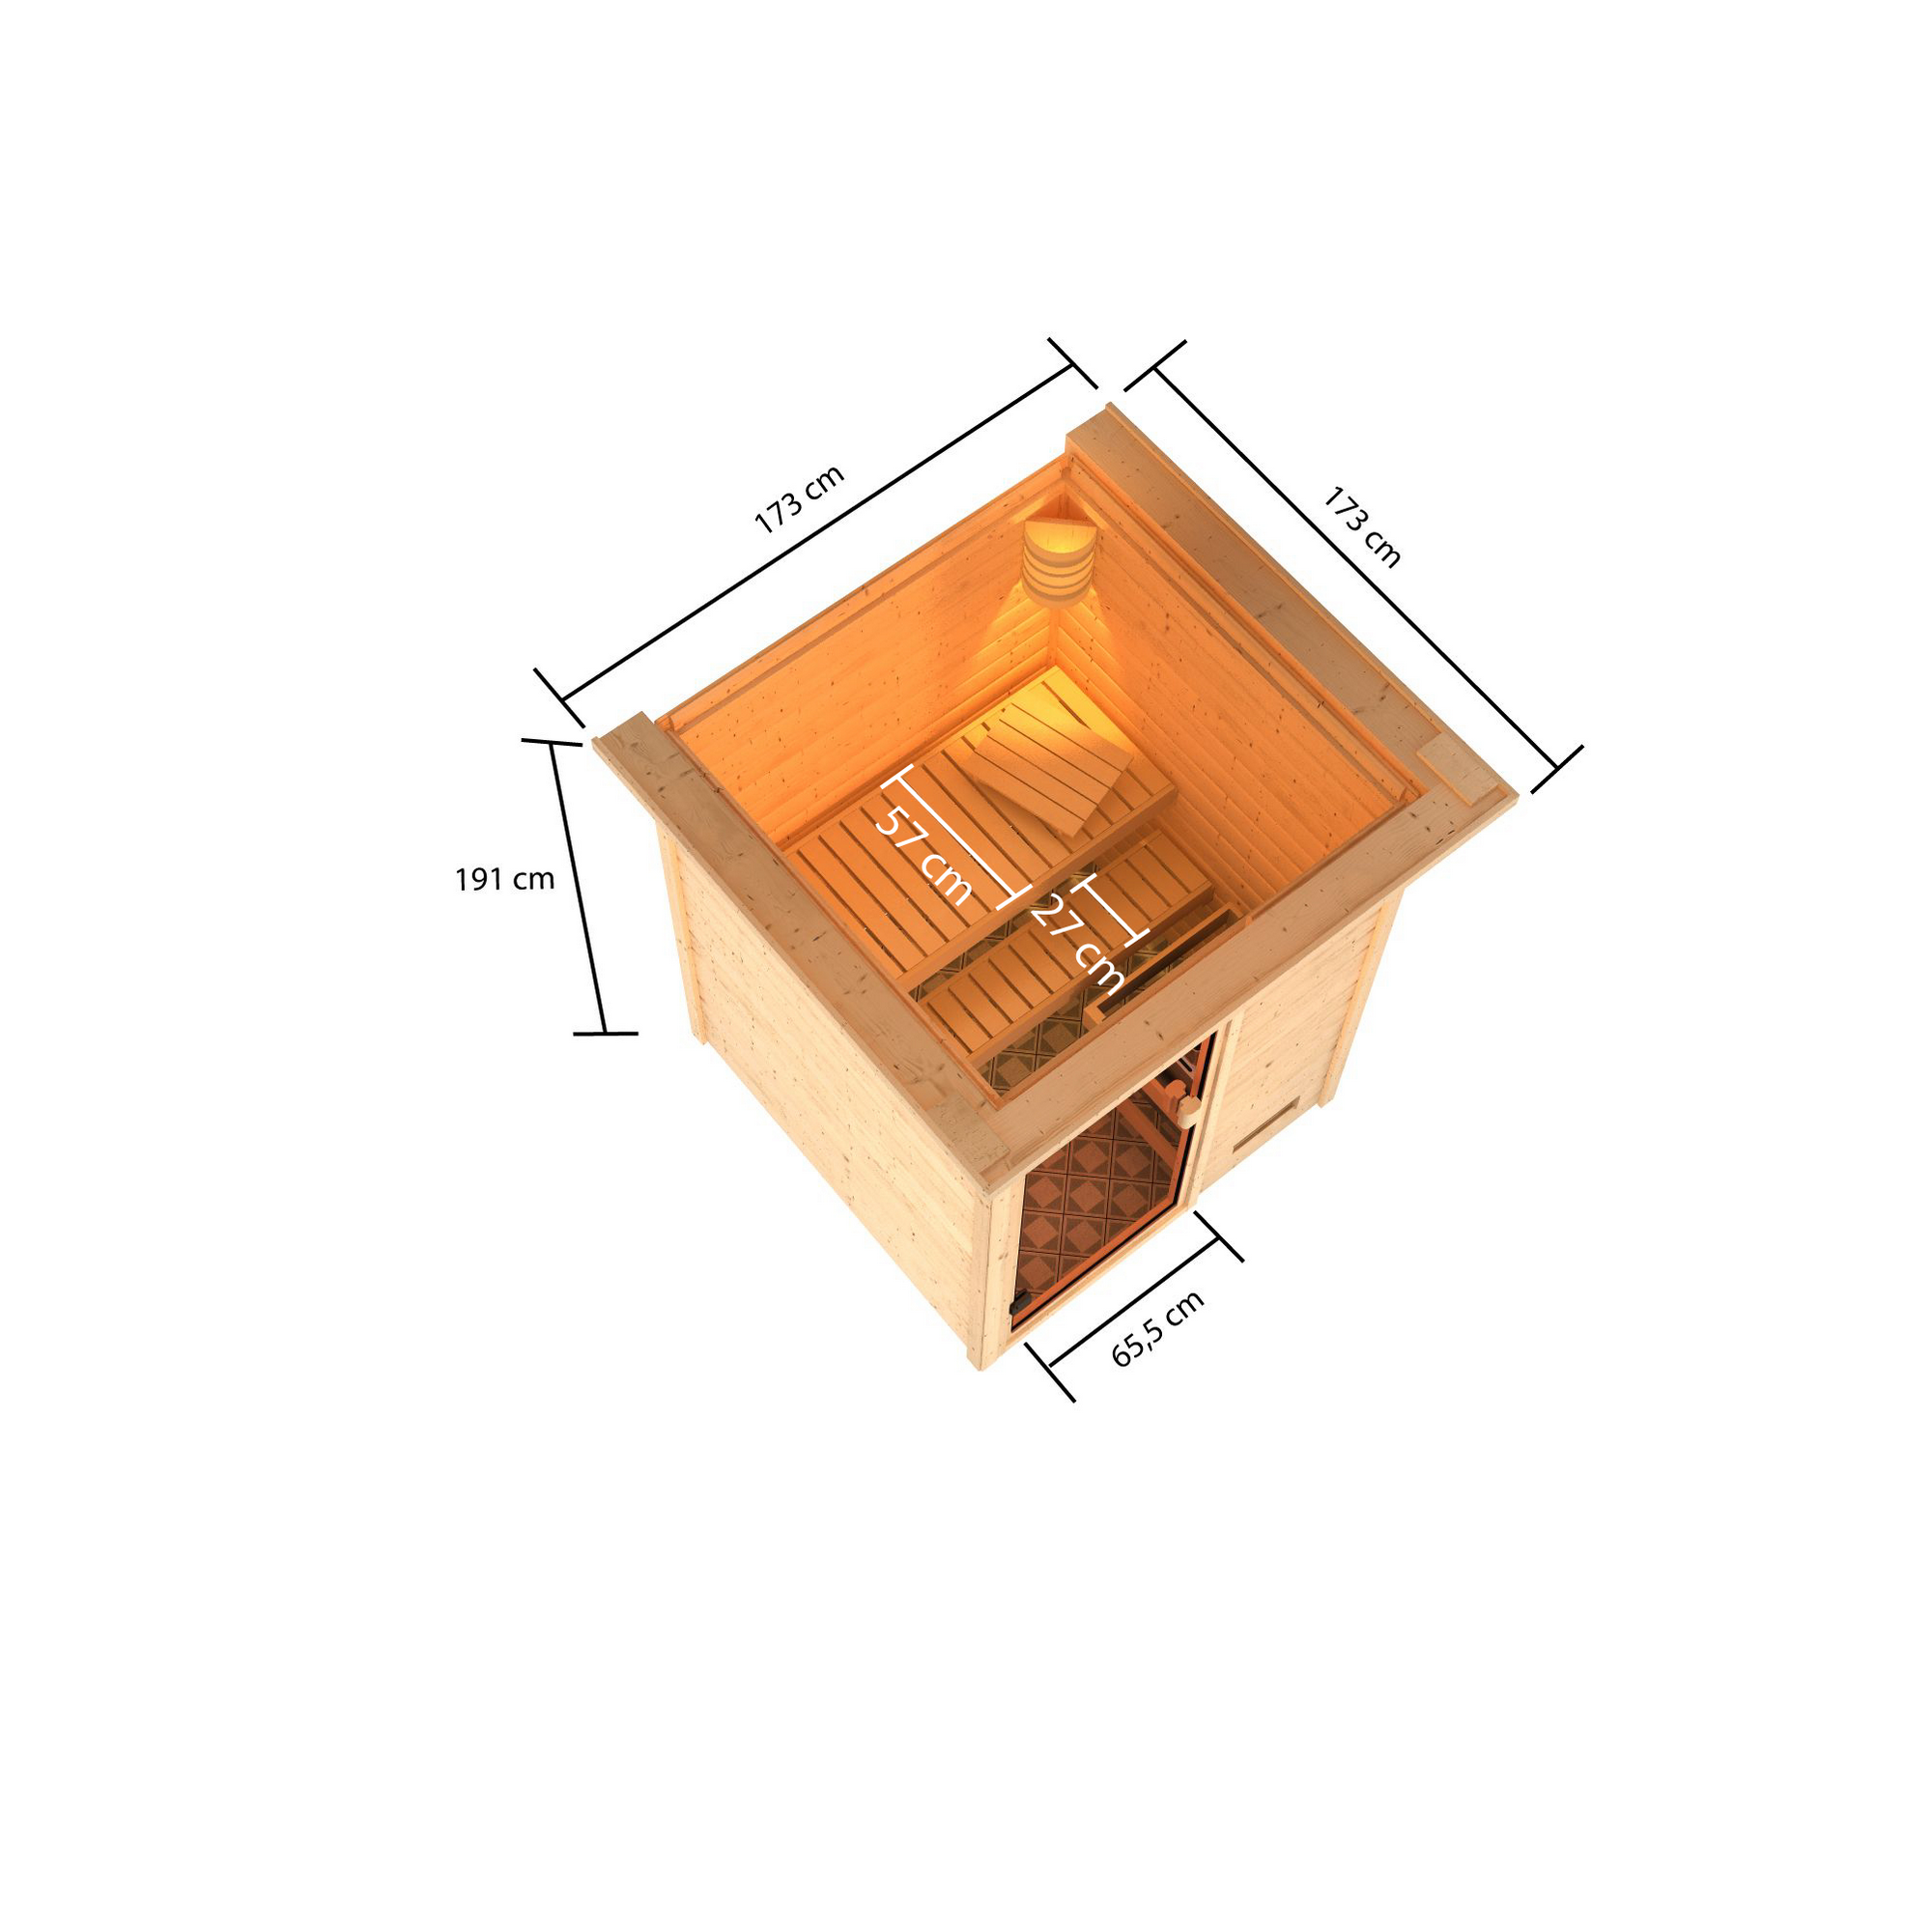 Massivholzsauna 'Cristina' naturbelassen mit Kranz und bronzierter Tür 9 kW Ofen integrierte Steuerung 173 x 159 x 191 cm + product picture